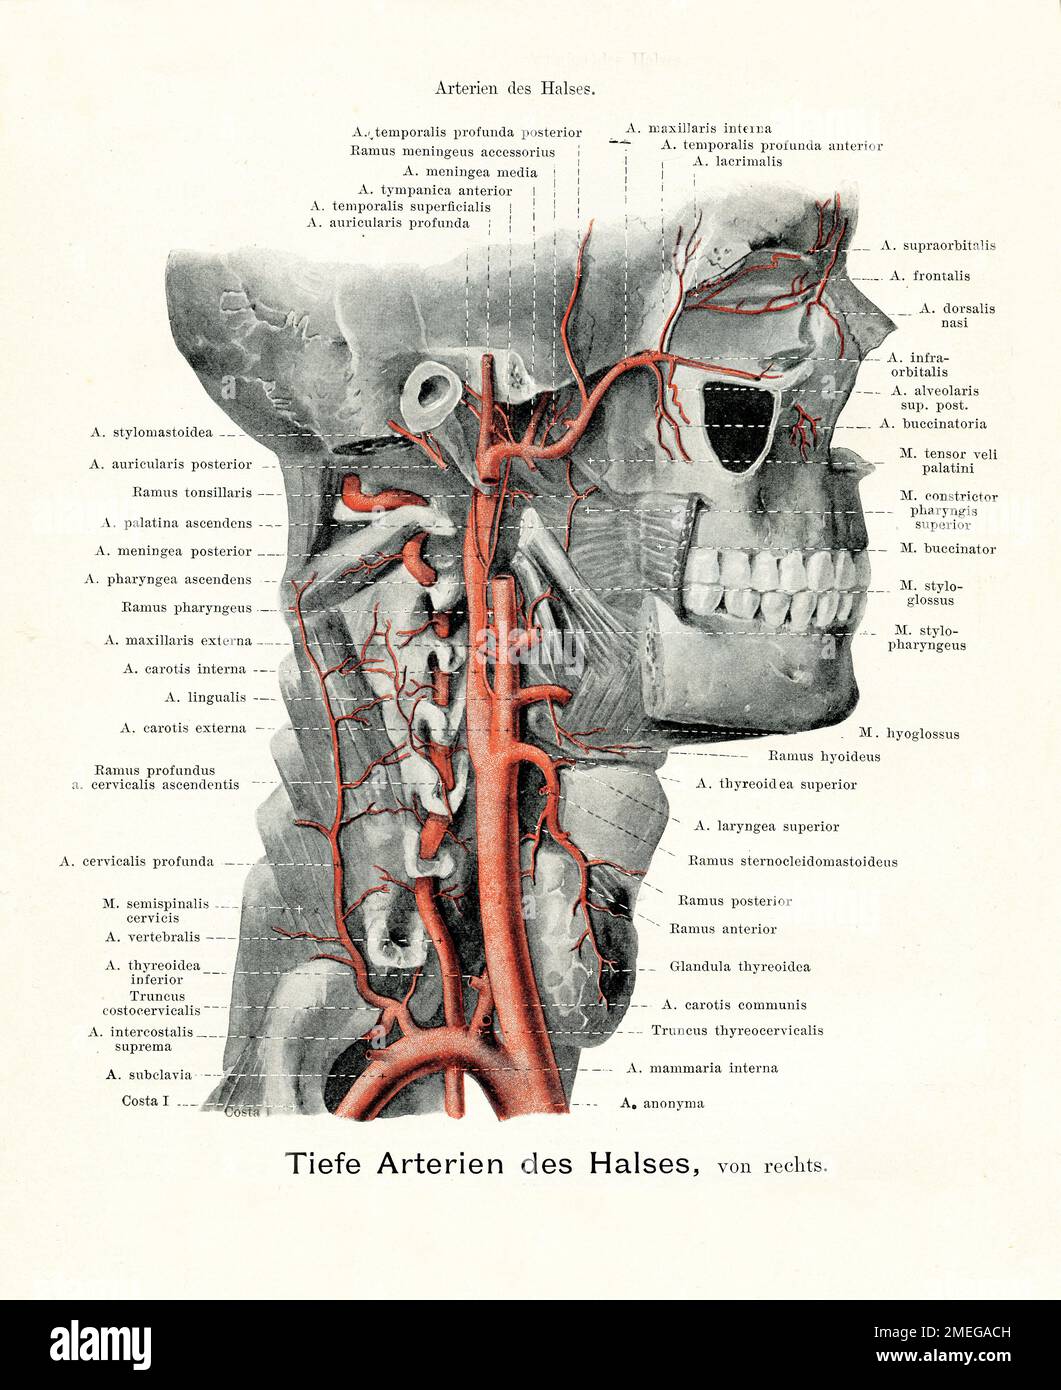 Artères de la gorge - Illustration ancienne de l'anatomie, avec des descriptions anatomiques allemandes Banque D'Images